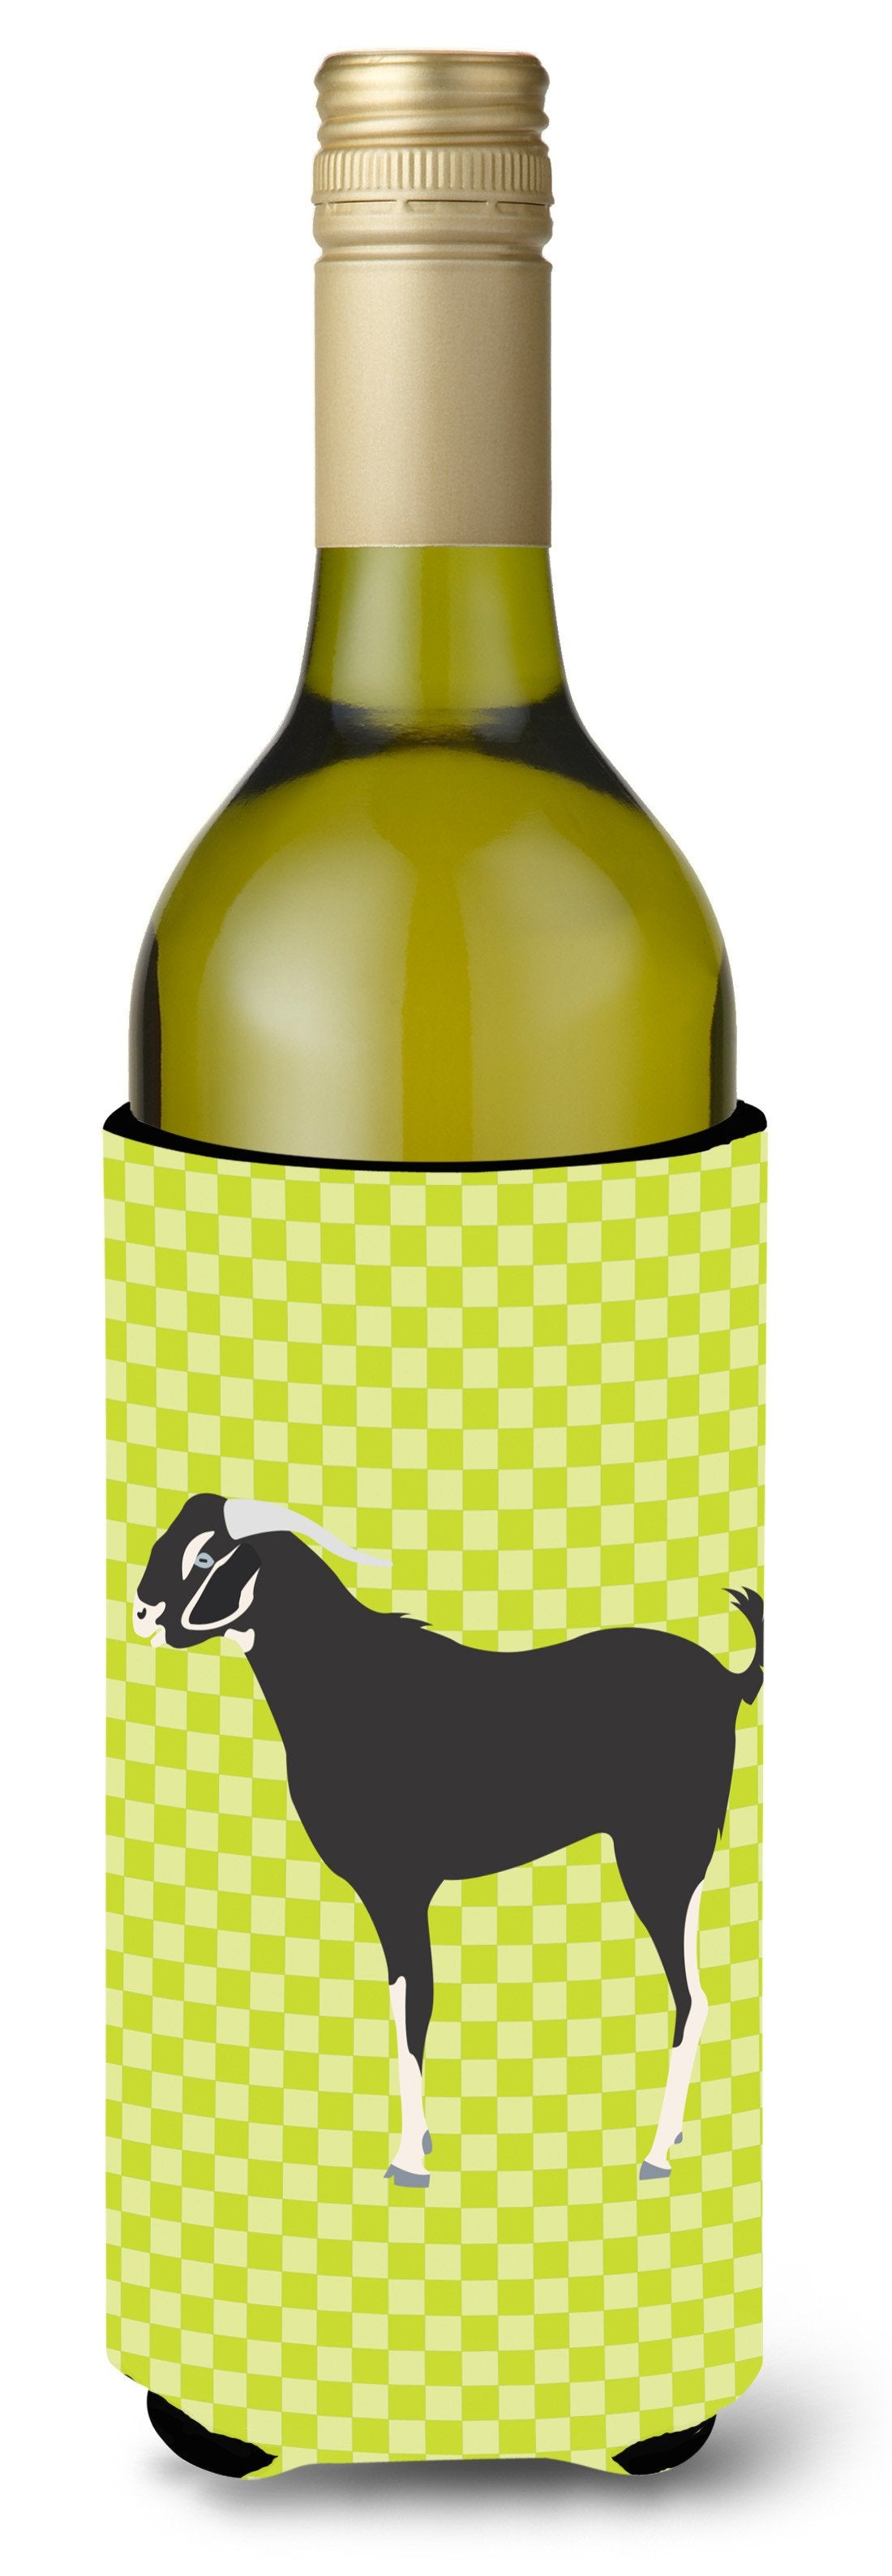 Black Bengal Goat Green Wine Bottle Beverge Insulator Hugger BB7710LITERK by Caroline's Treasures